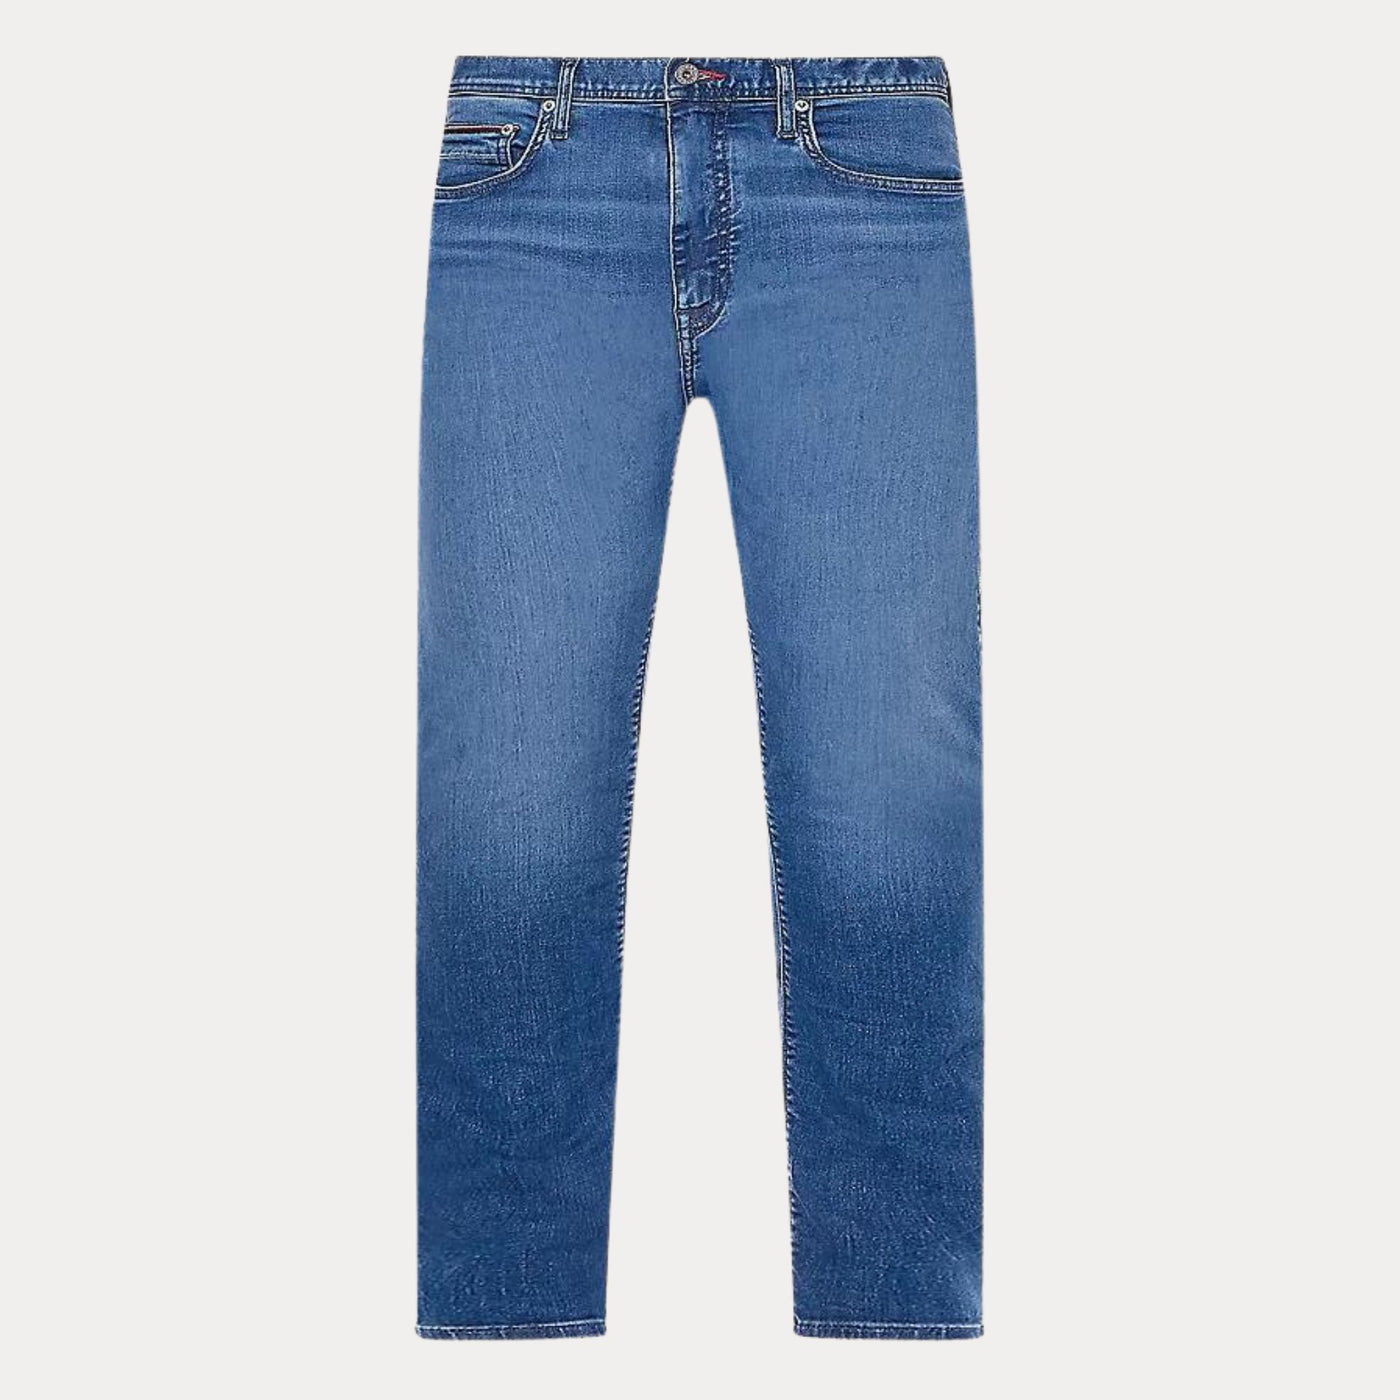 jeans uomo firmato tommy Hilfiger con passanti cintura, lavaggio leggermente sbiadito e dalla vestibilità slim. 